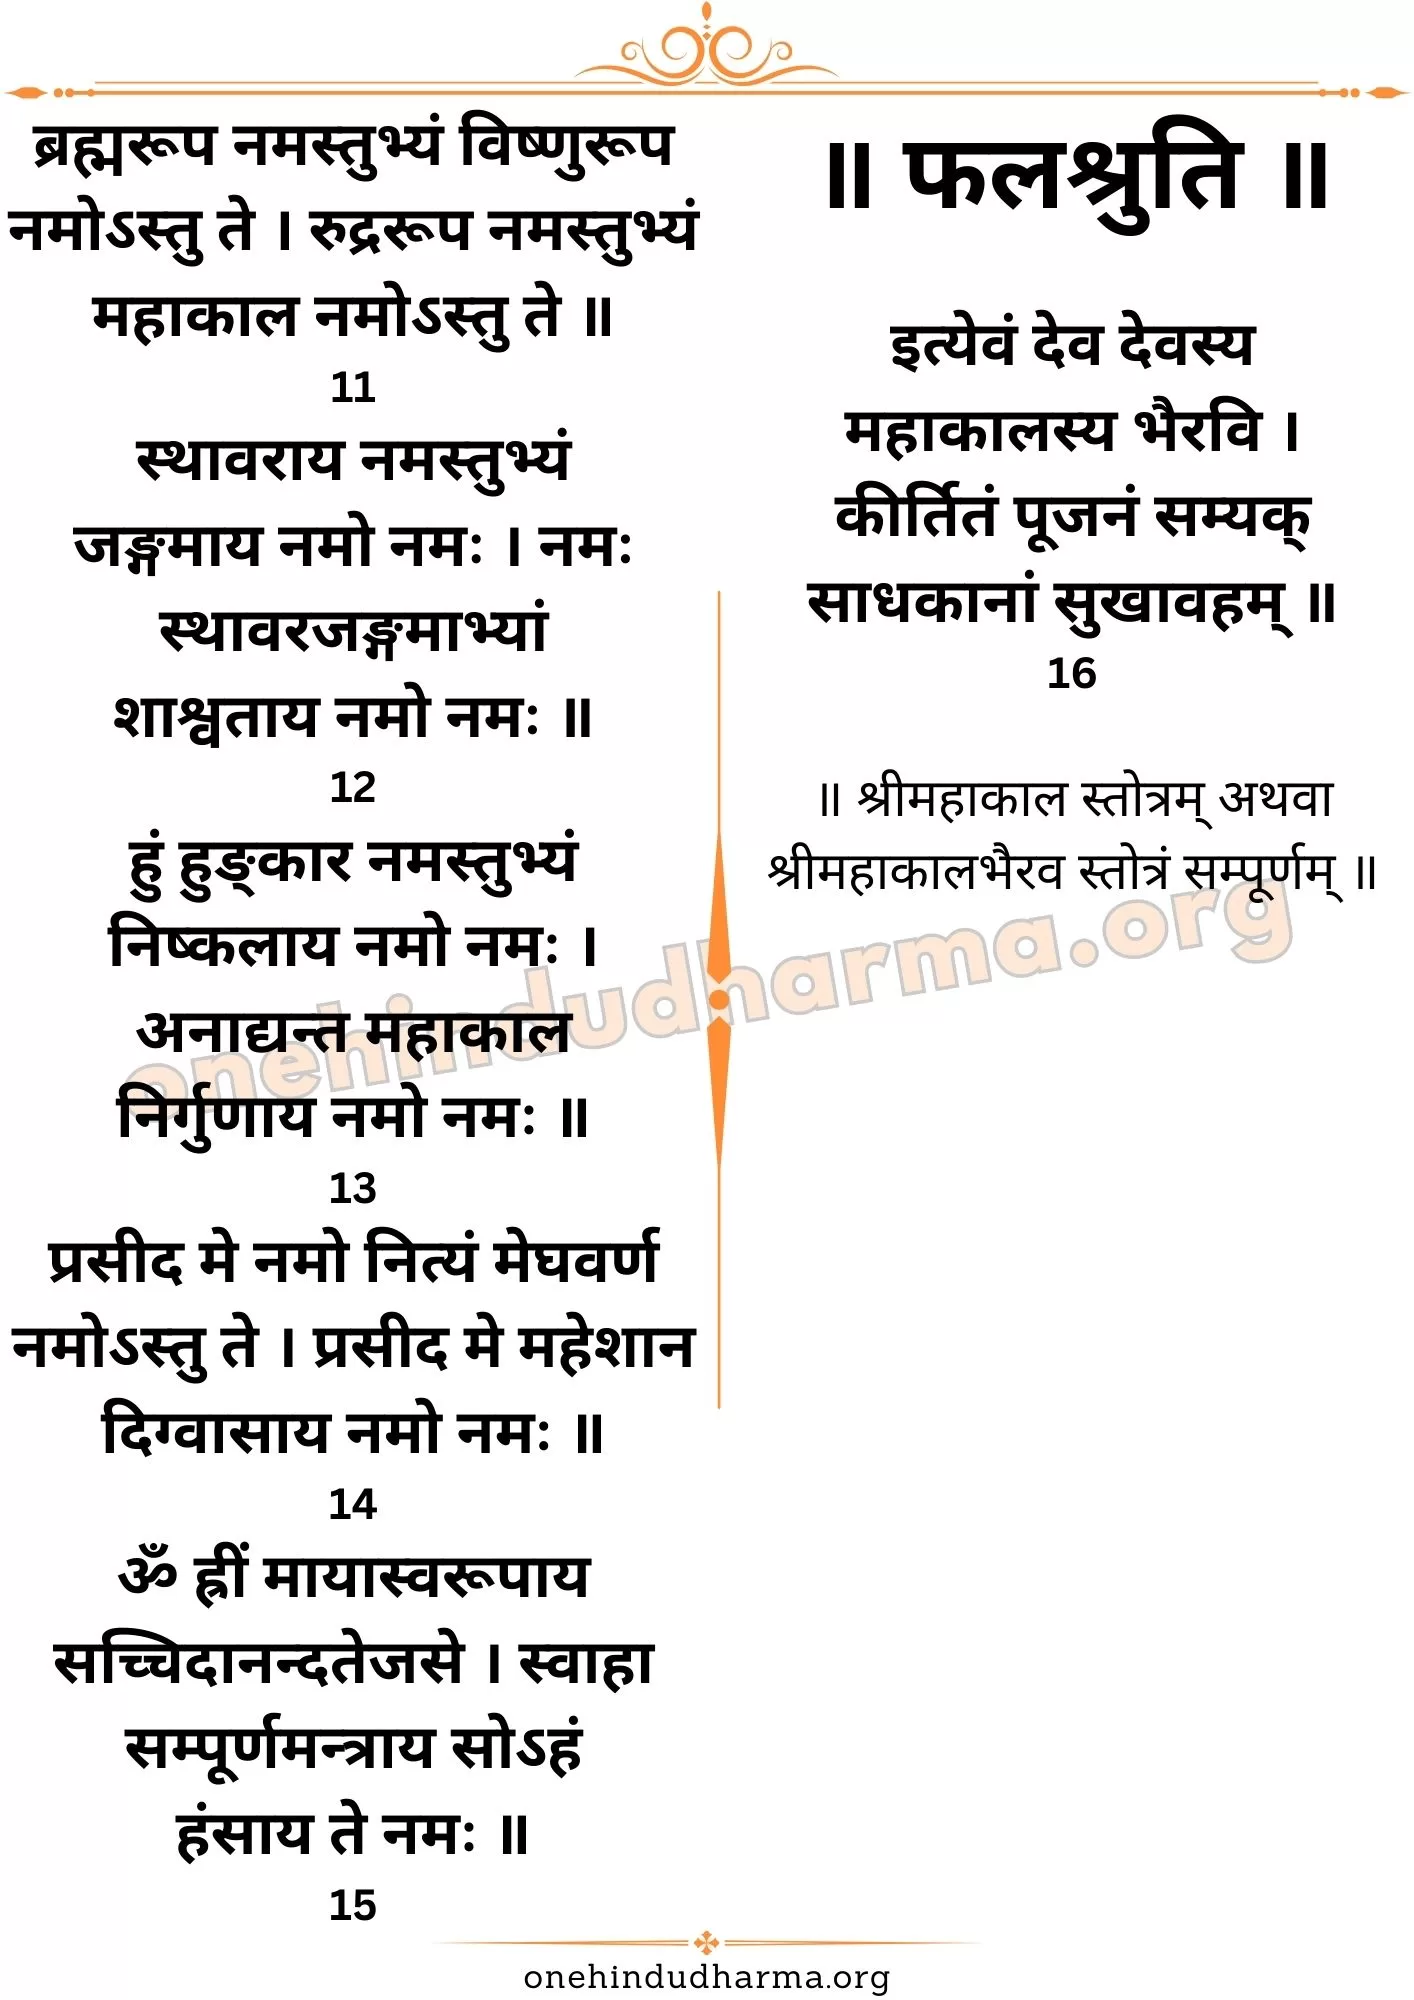 महाकाल स्तोत्र (Mahakal Stotra Lyrics In Sanskrit)